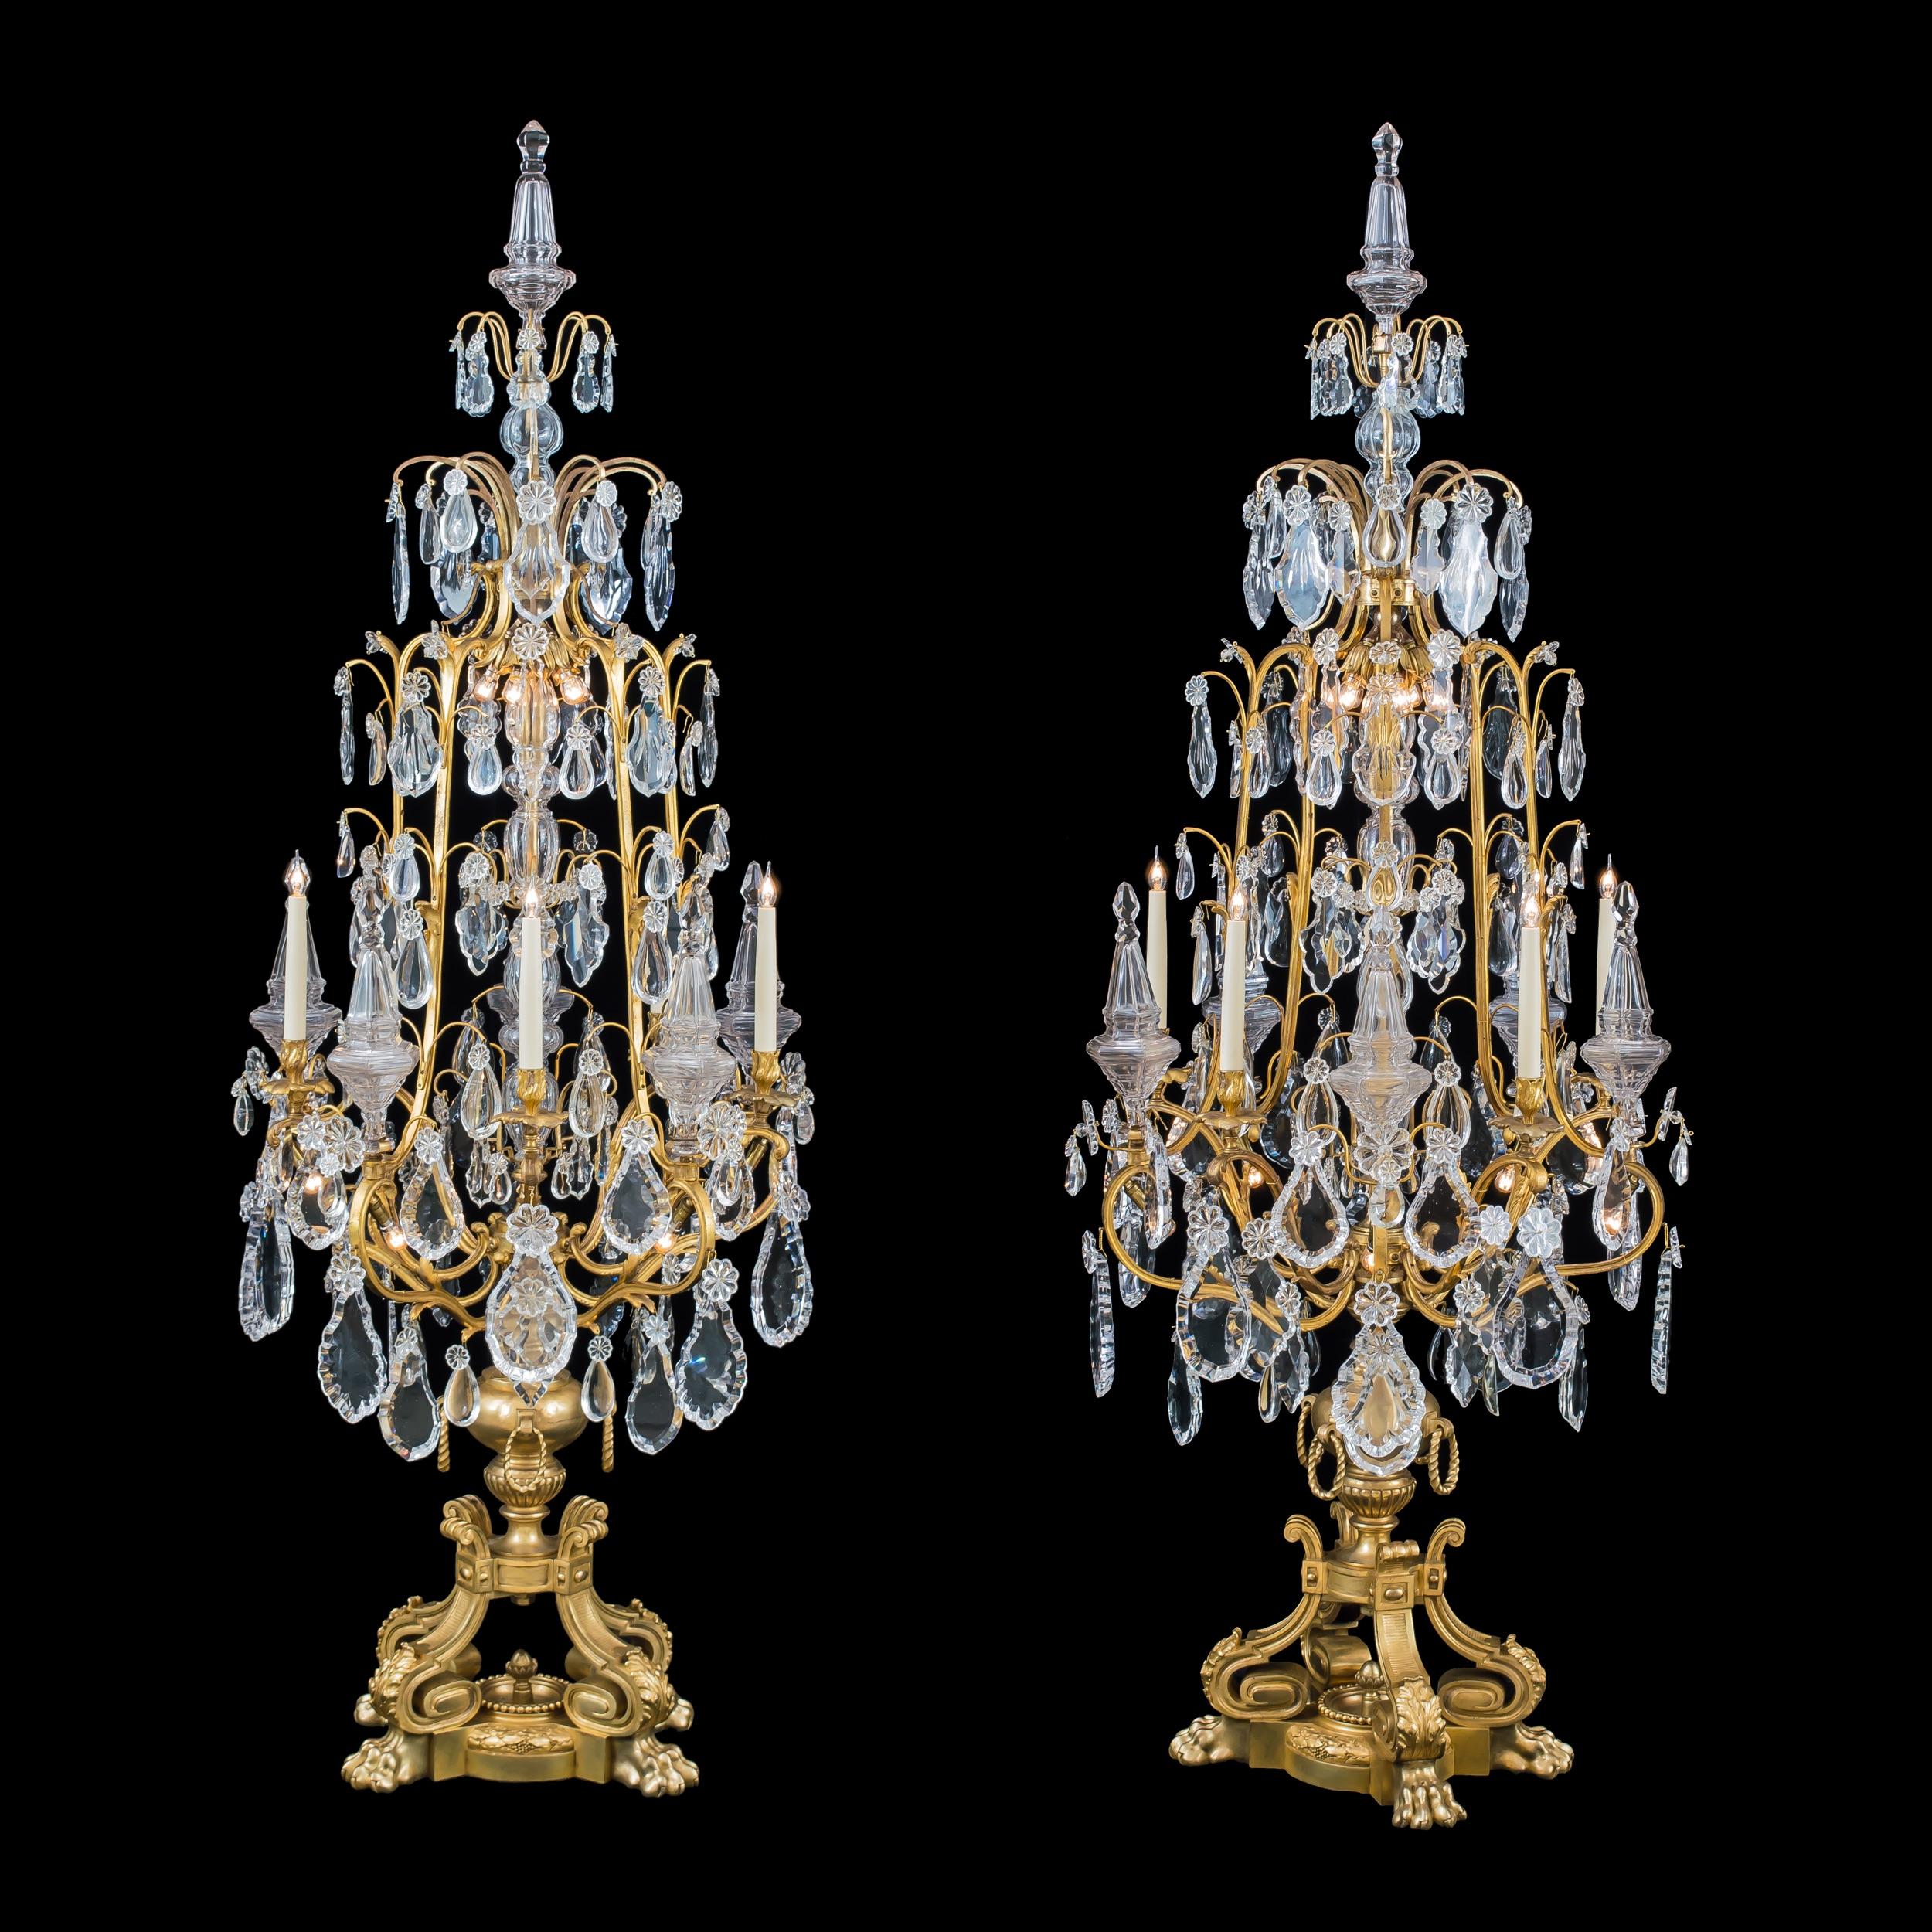 Une magnifique paire de style Louis XV
Girandoles en ormolu et cristal
Probablement par Baccarat

Fabriqués en bronze doré finement coulé et ciselé, ces imposants candélabres de sol - de près de 2 mètres de haut - reposent sur quatre pieds en